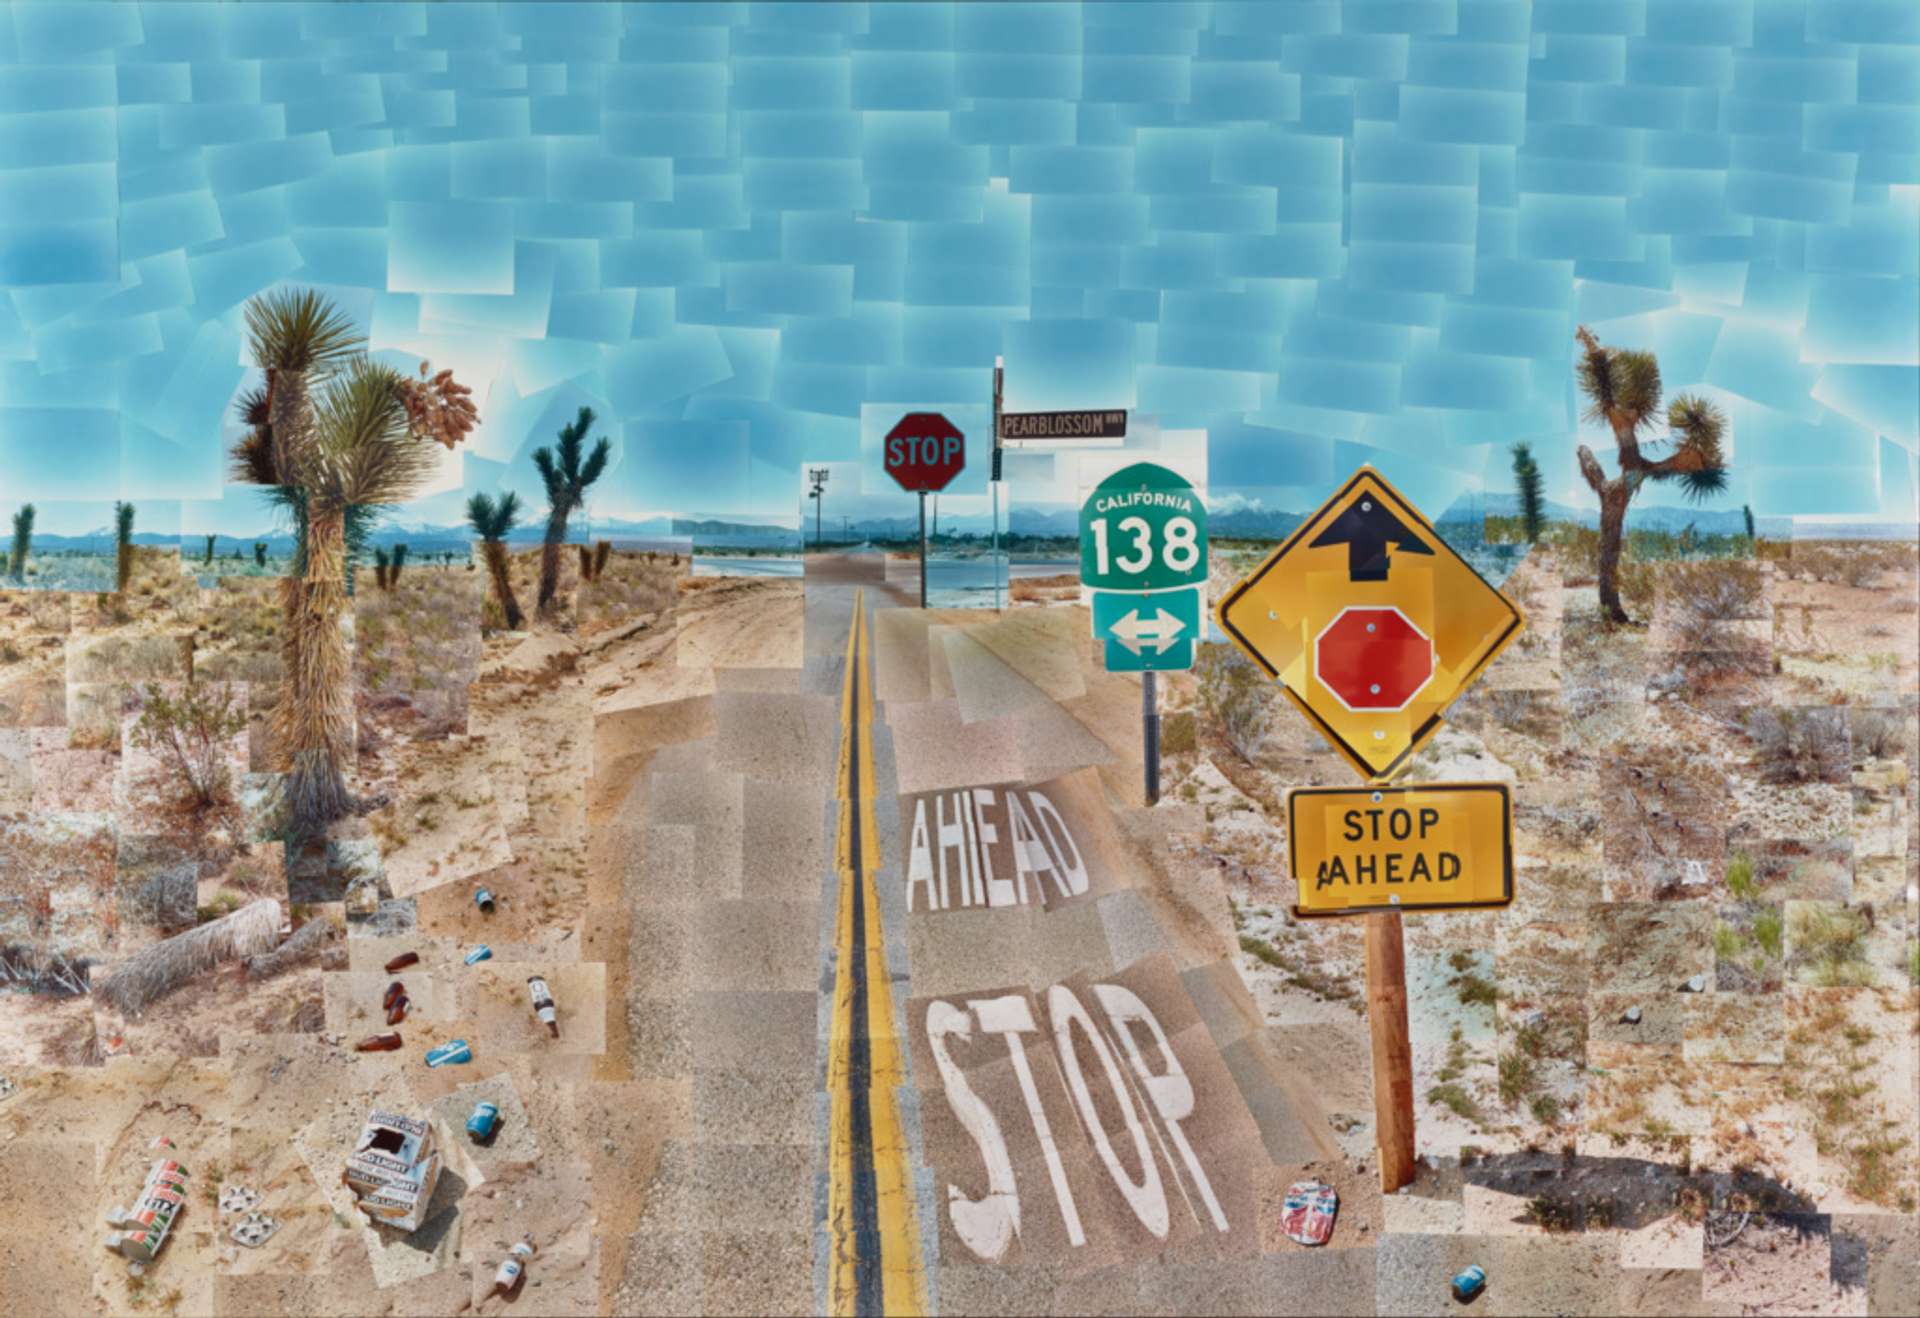 Pearblossom Highway by David Hockney